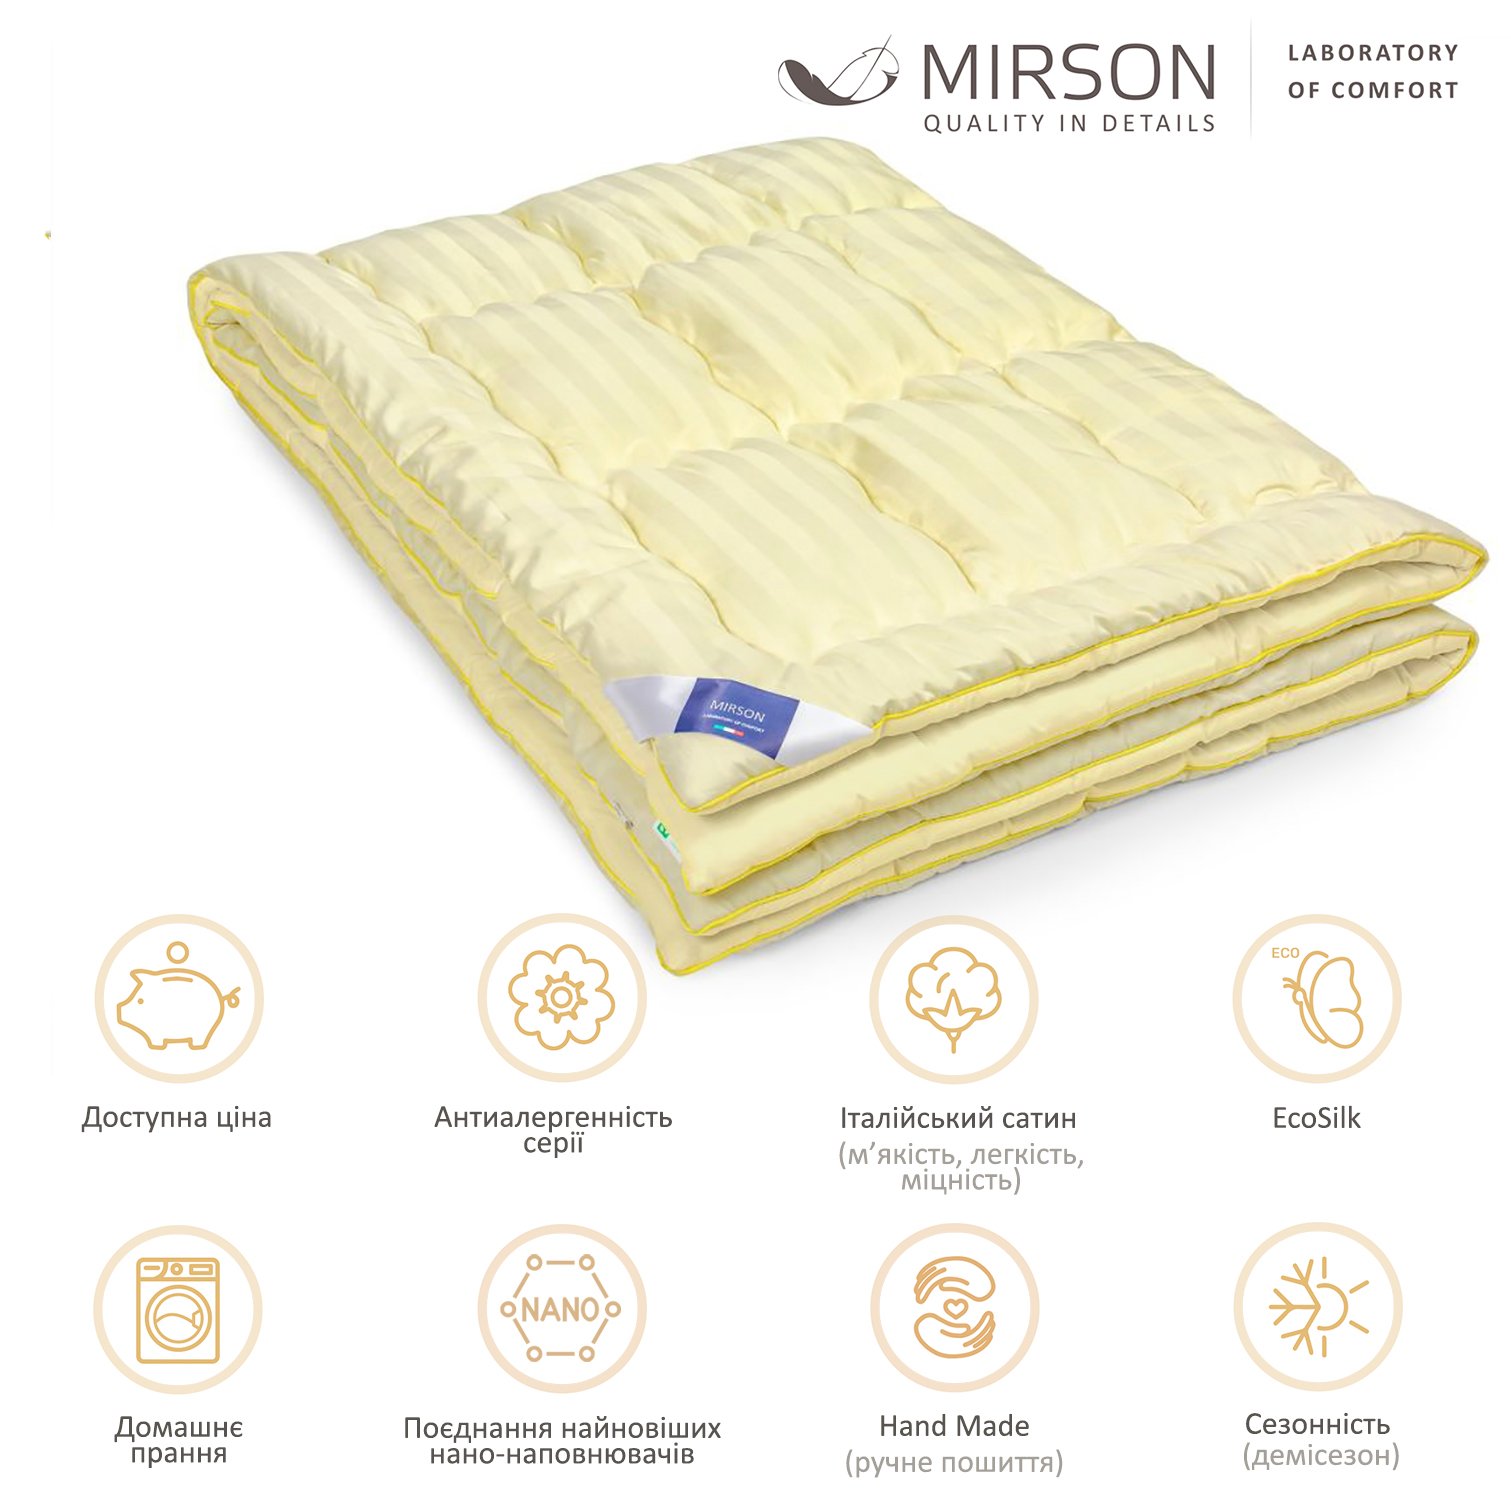 Одеяло антиаллергенное MirSon Carmela Hand Made EcoSilk №065, демисезонное, 155x215 см, светло-желтое - фото 4